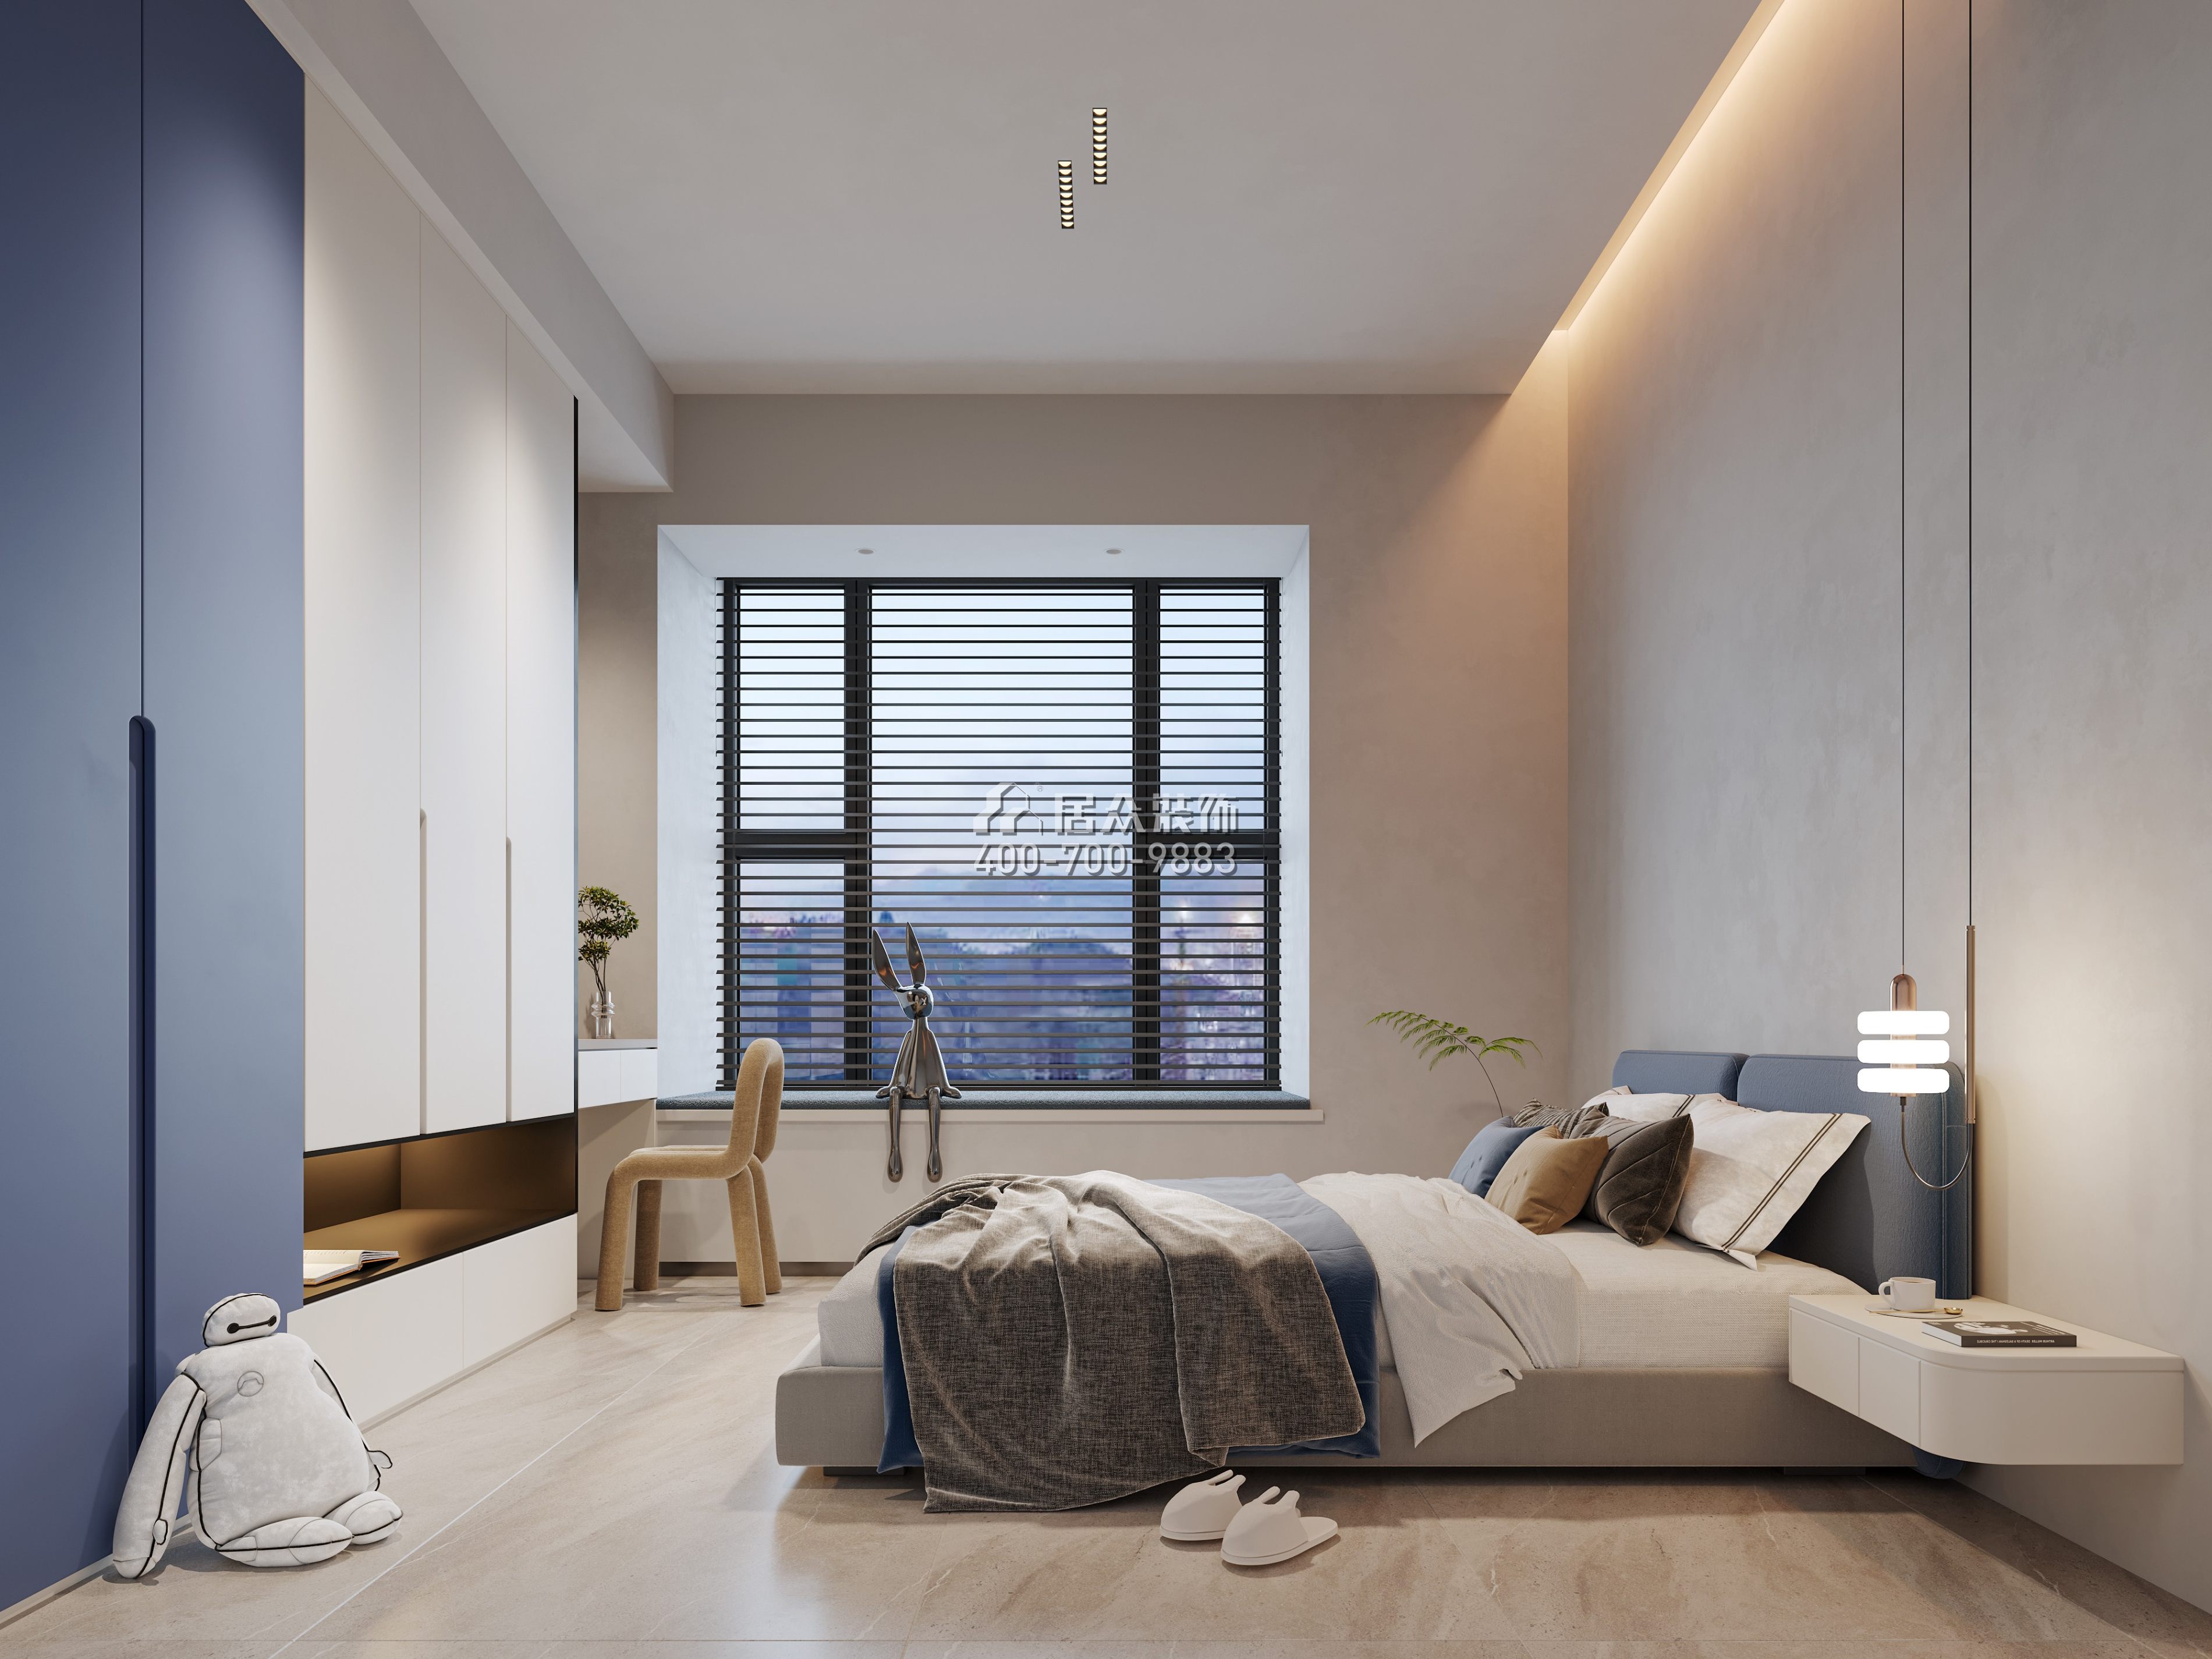 中澳春城180平方米现代简约风格平层户型卧室装修效果图